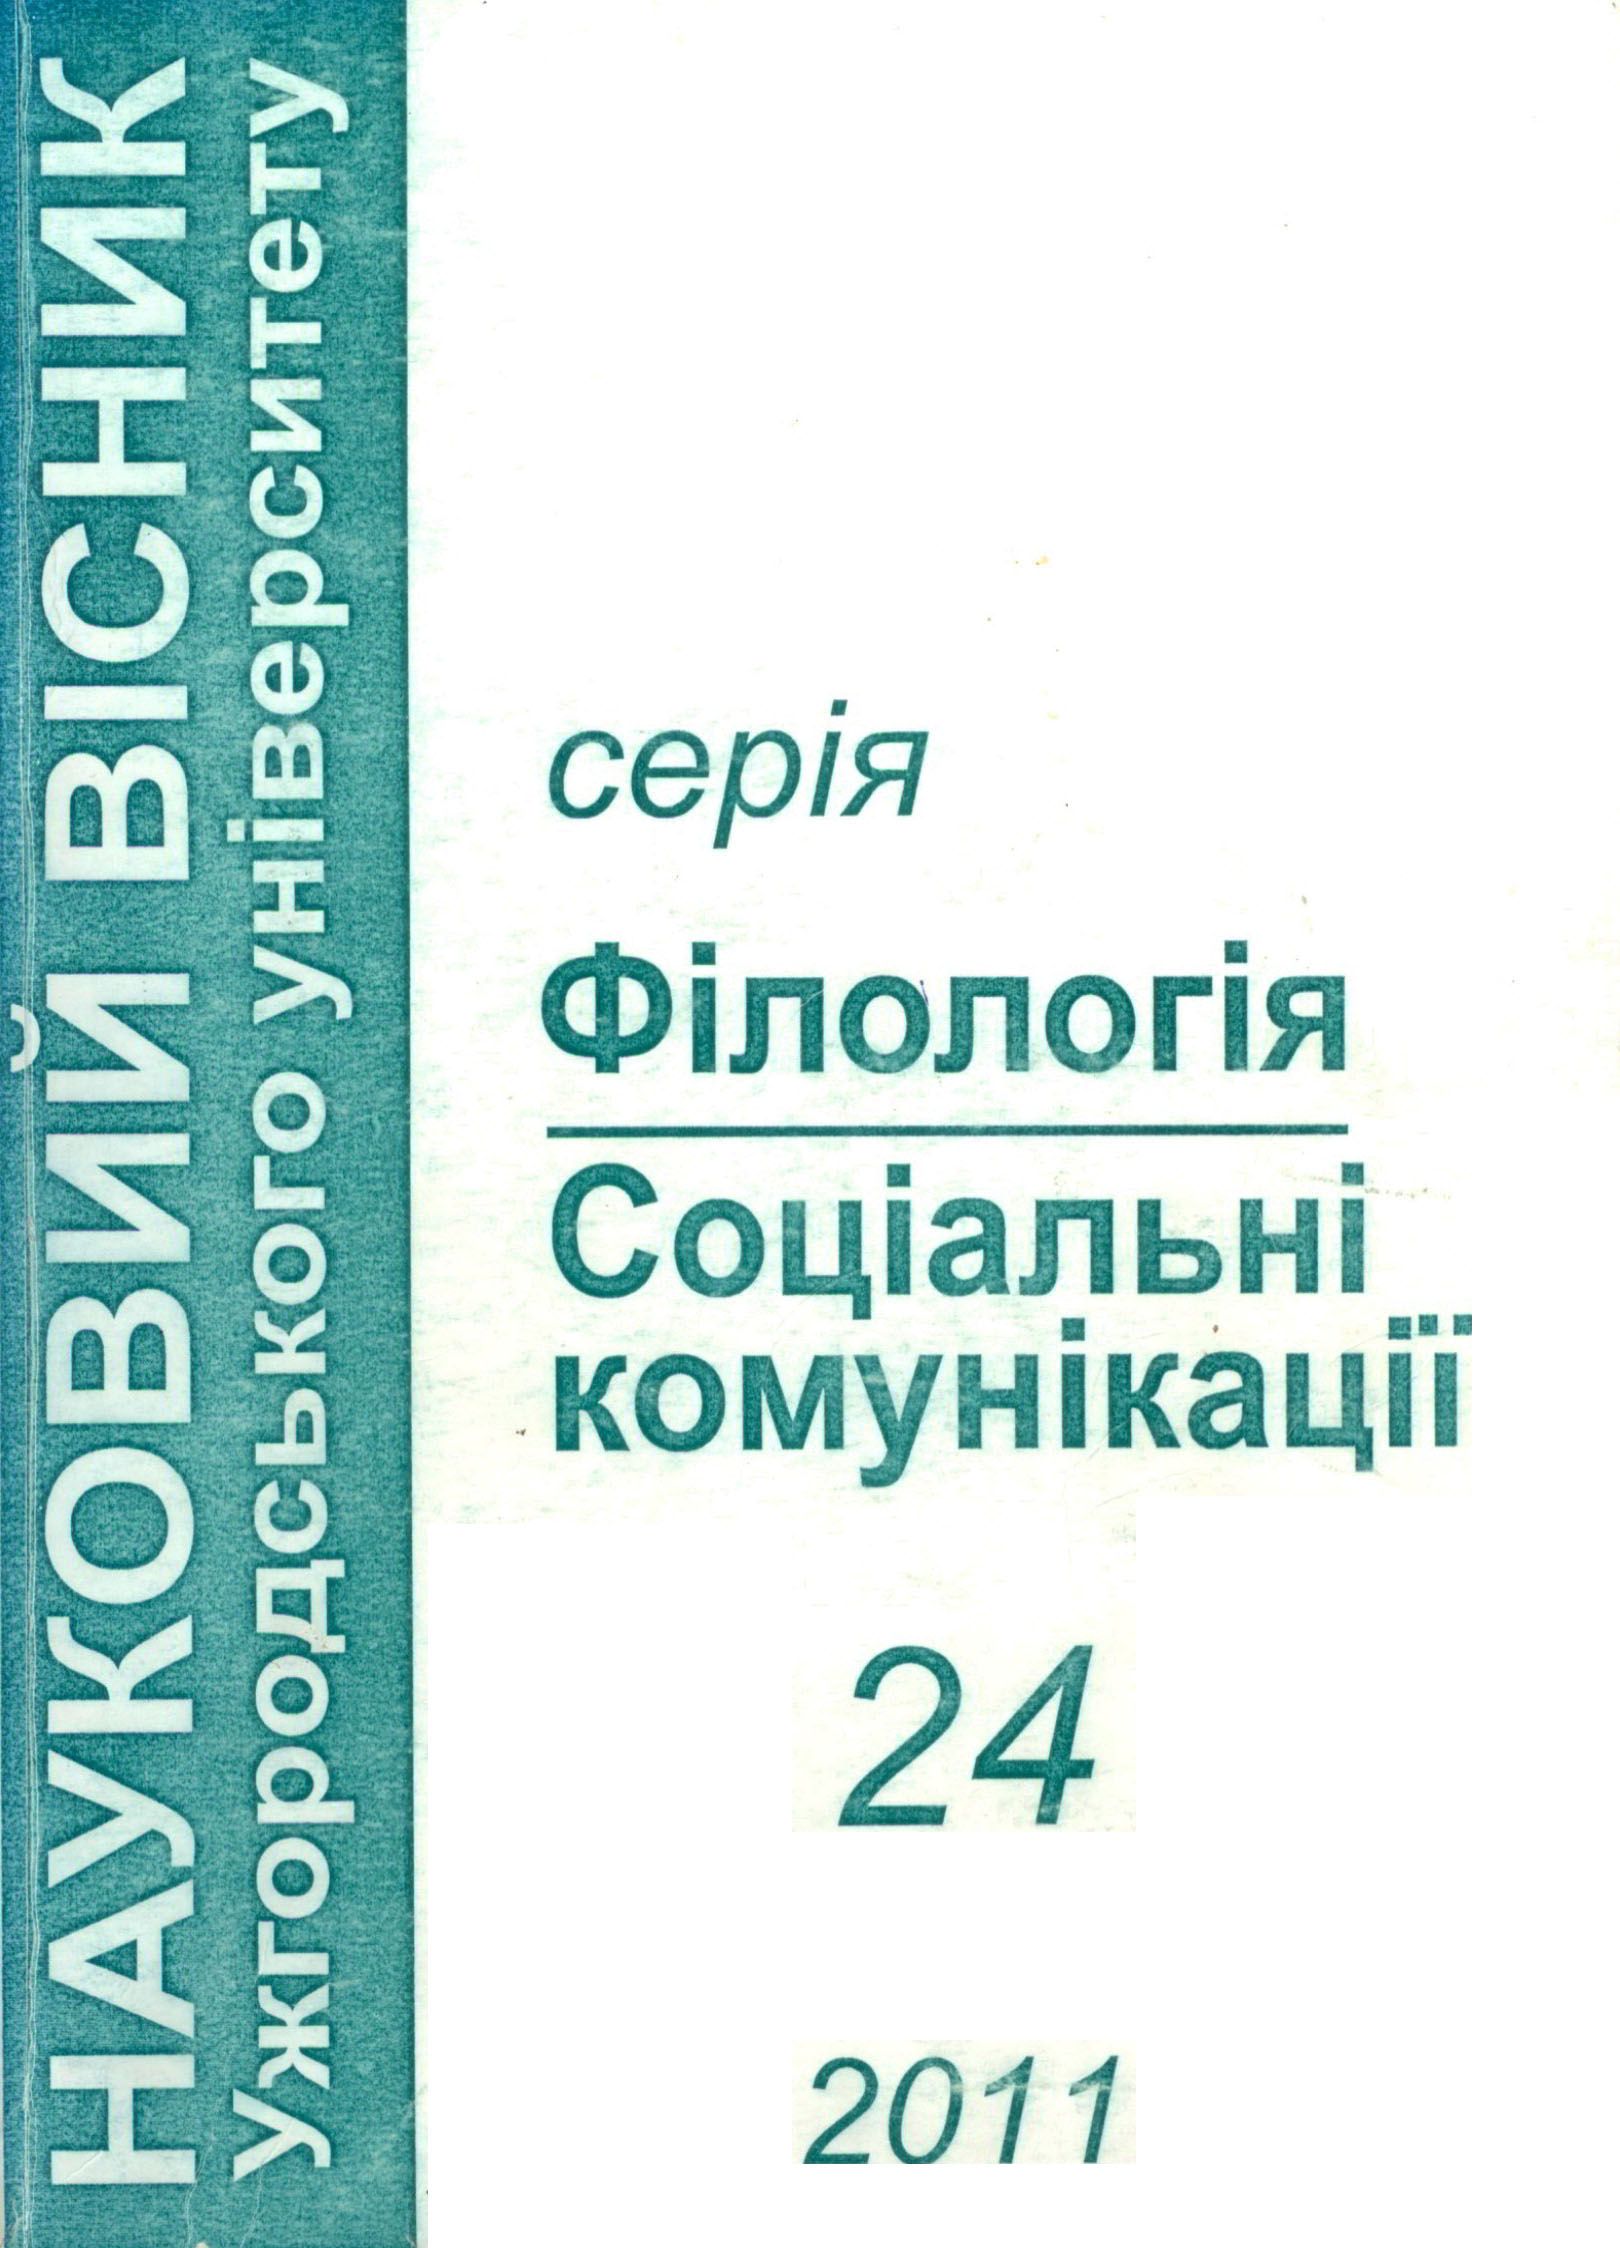 collection logo